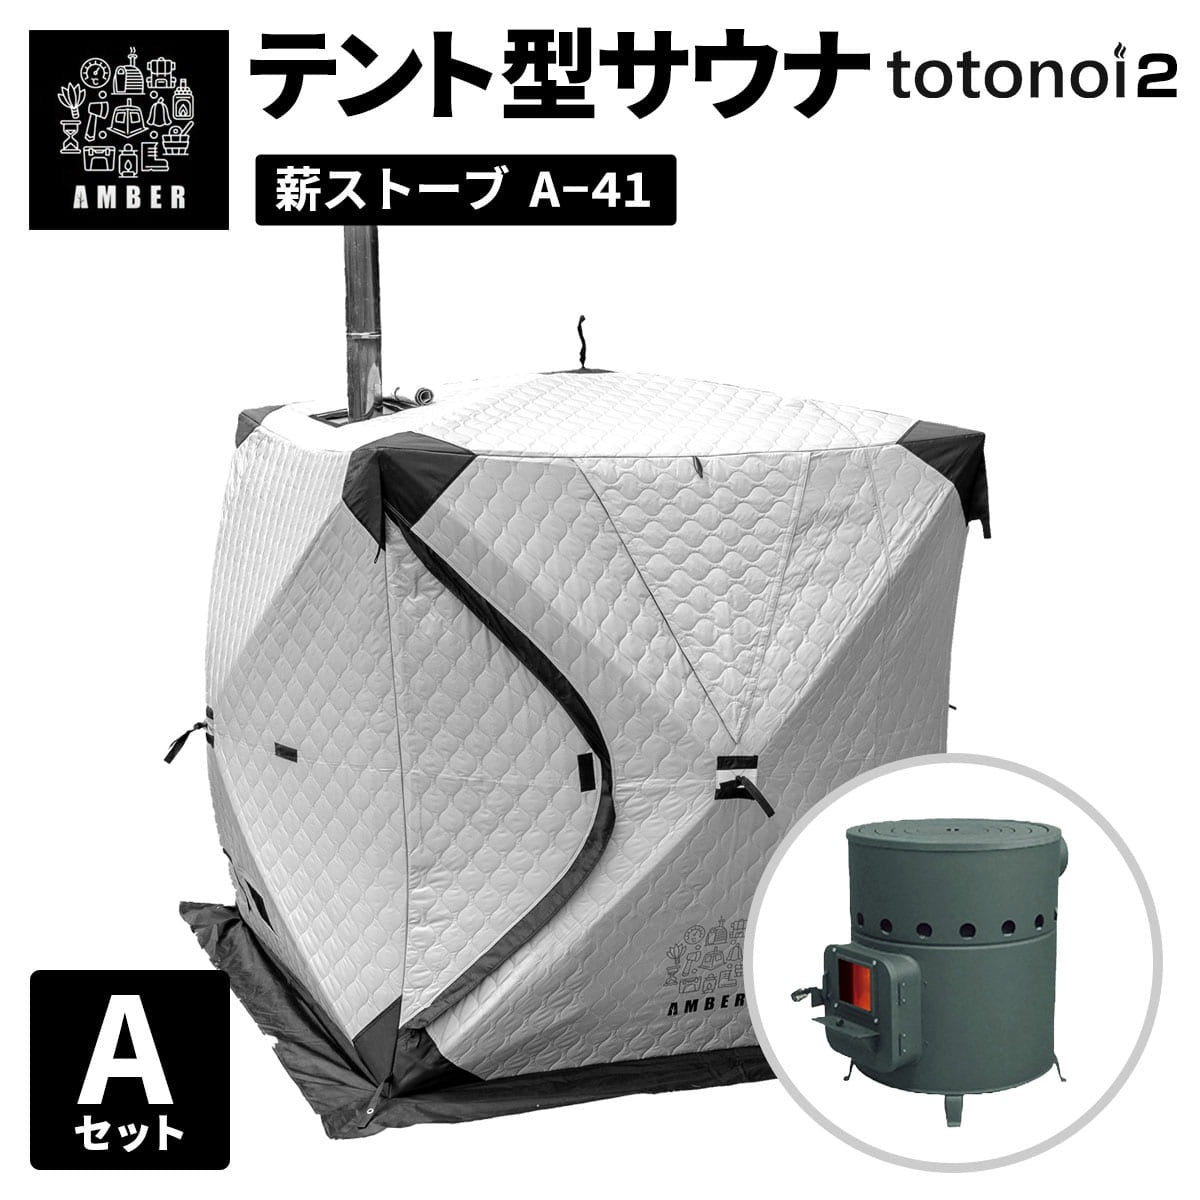 AMBER テント型サウナ totonoi2 (Aセット)ストーブコンロセット A-41